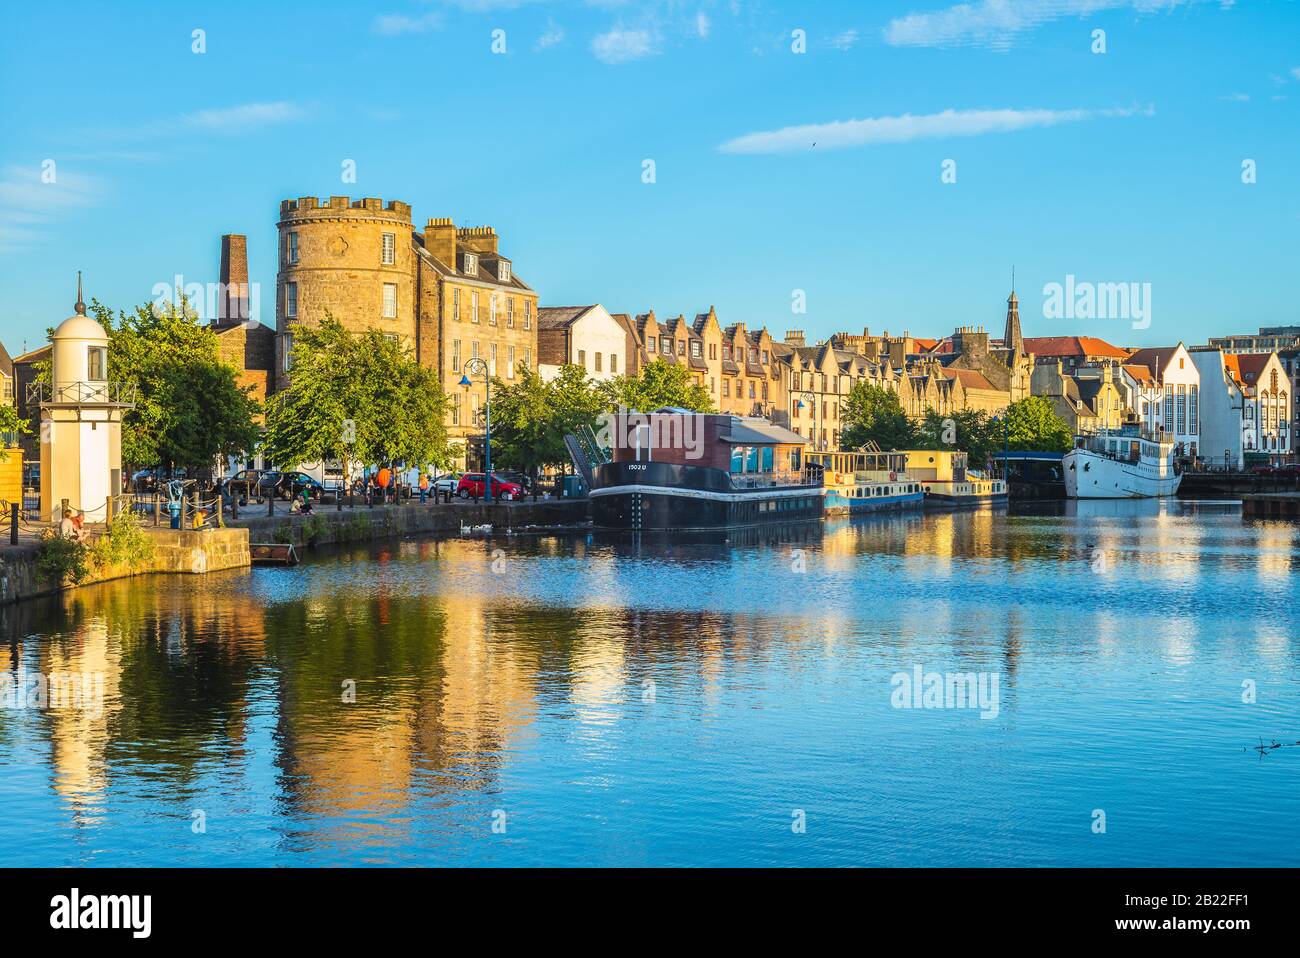 Das Ufer des Wassers von leith, edinburgh, Großbritannien Stockfoto